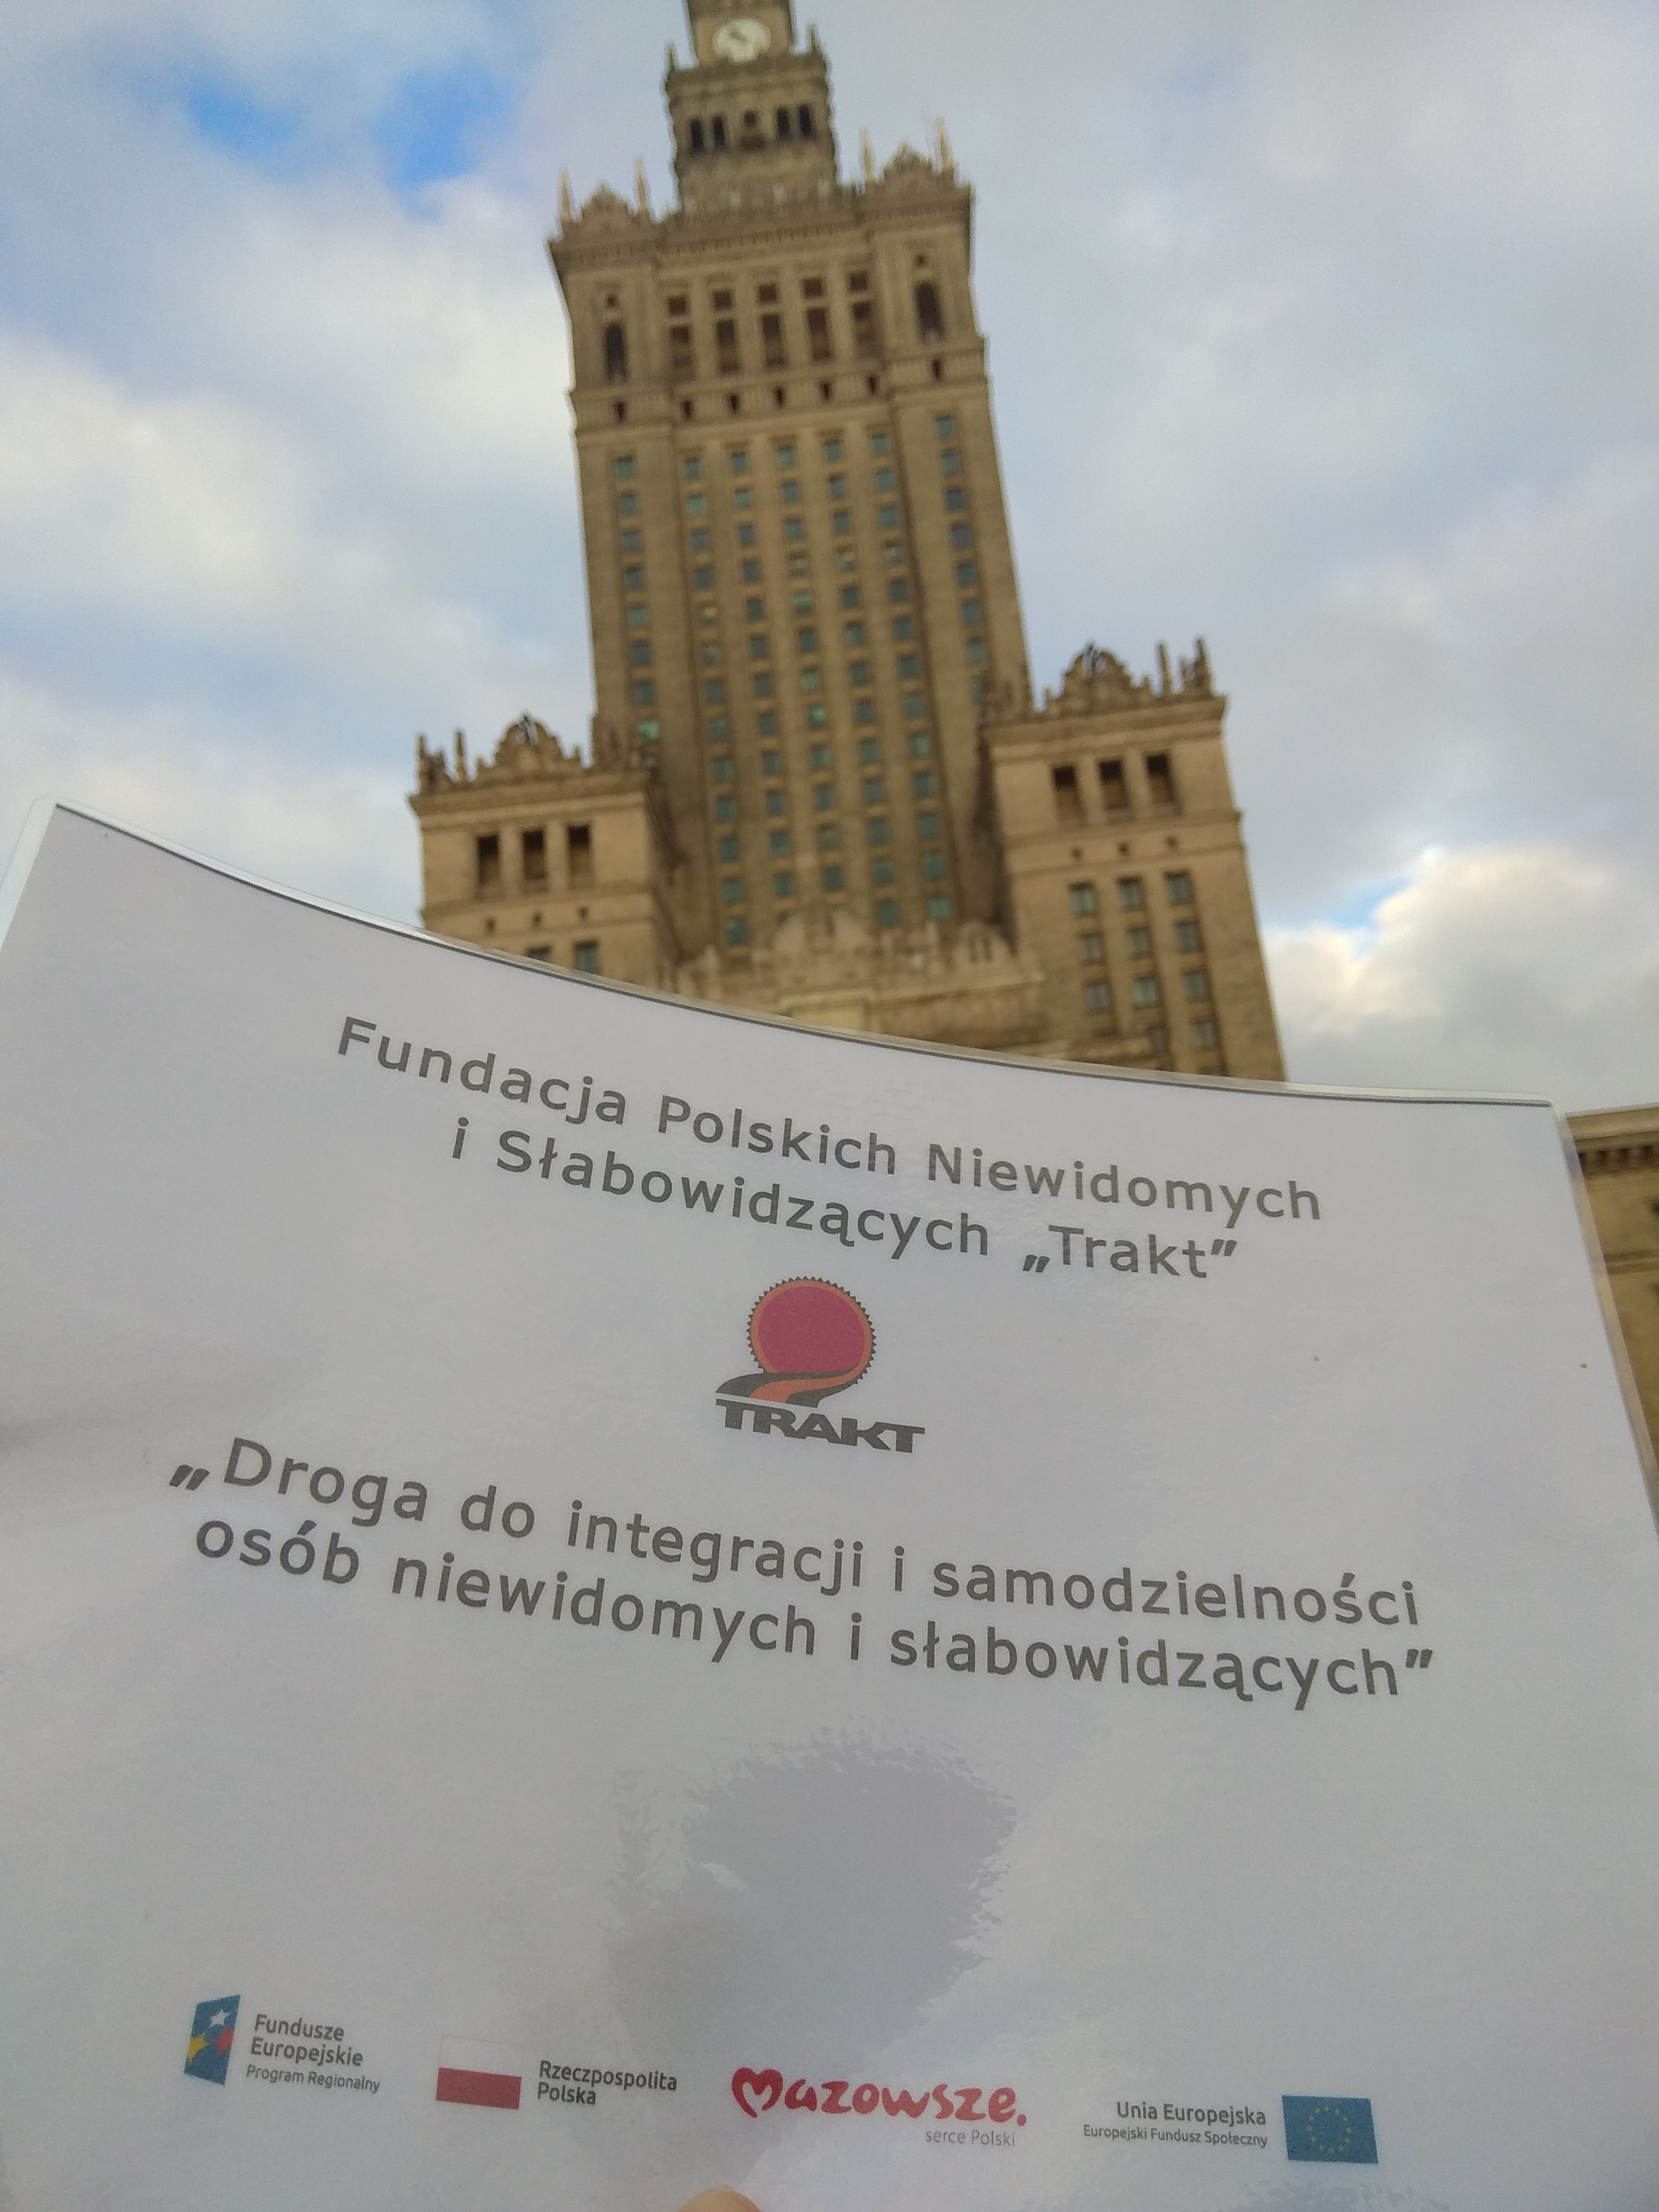 Pałac Kultury i Nauki w Warszawie – wysoki, strzelisty budynek w jasnej kolorystyce z wieloma oknami , a pod nim wkomponowany plakat projektu unijnego.